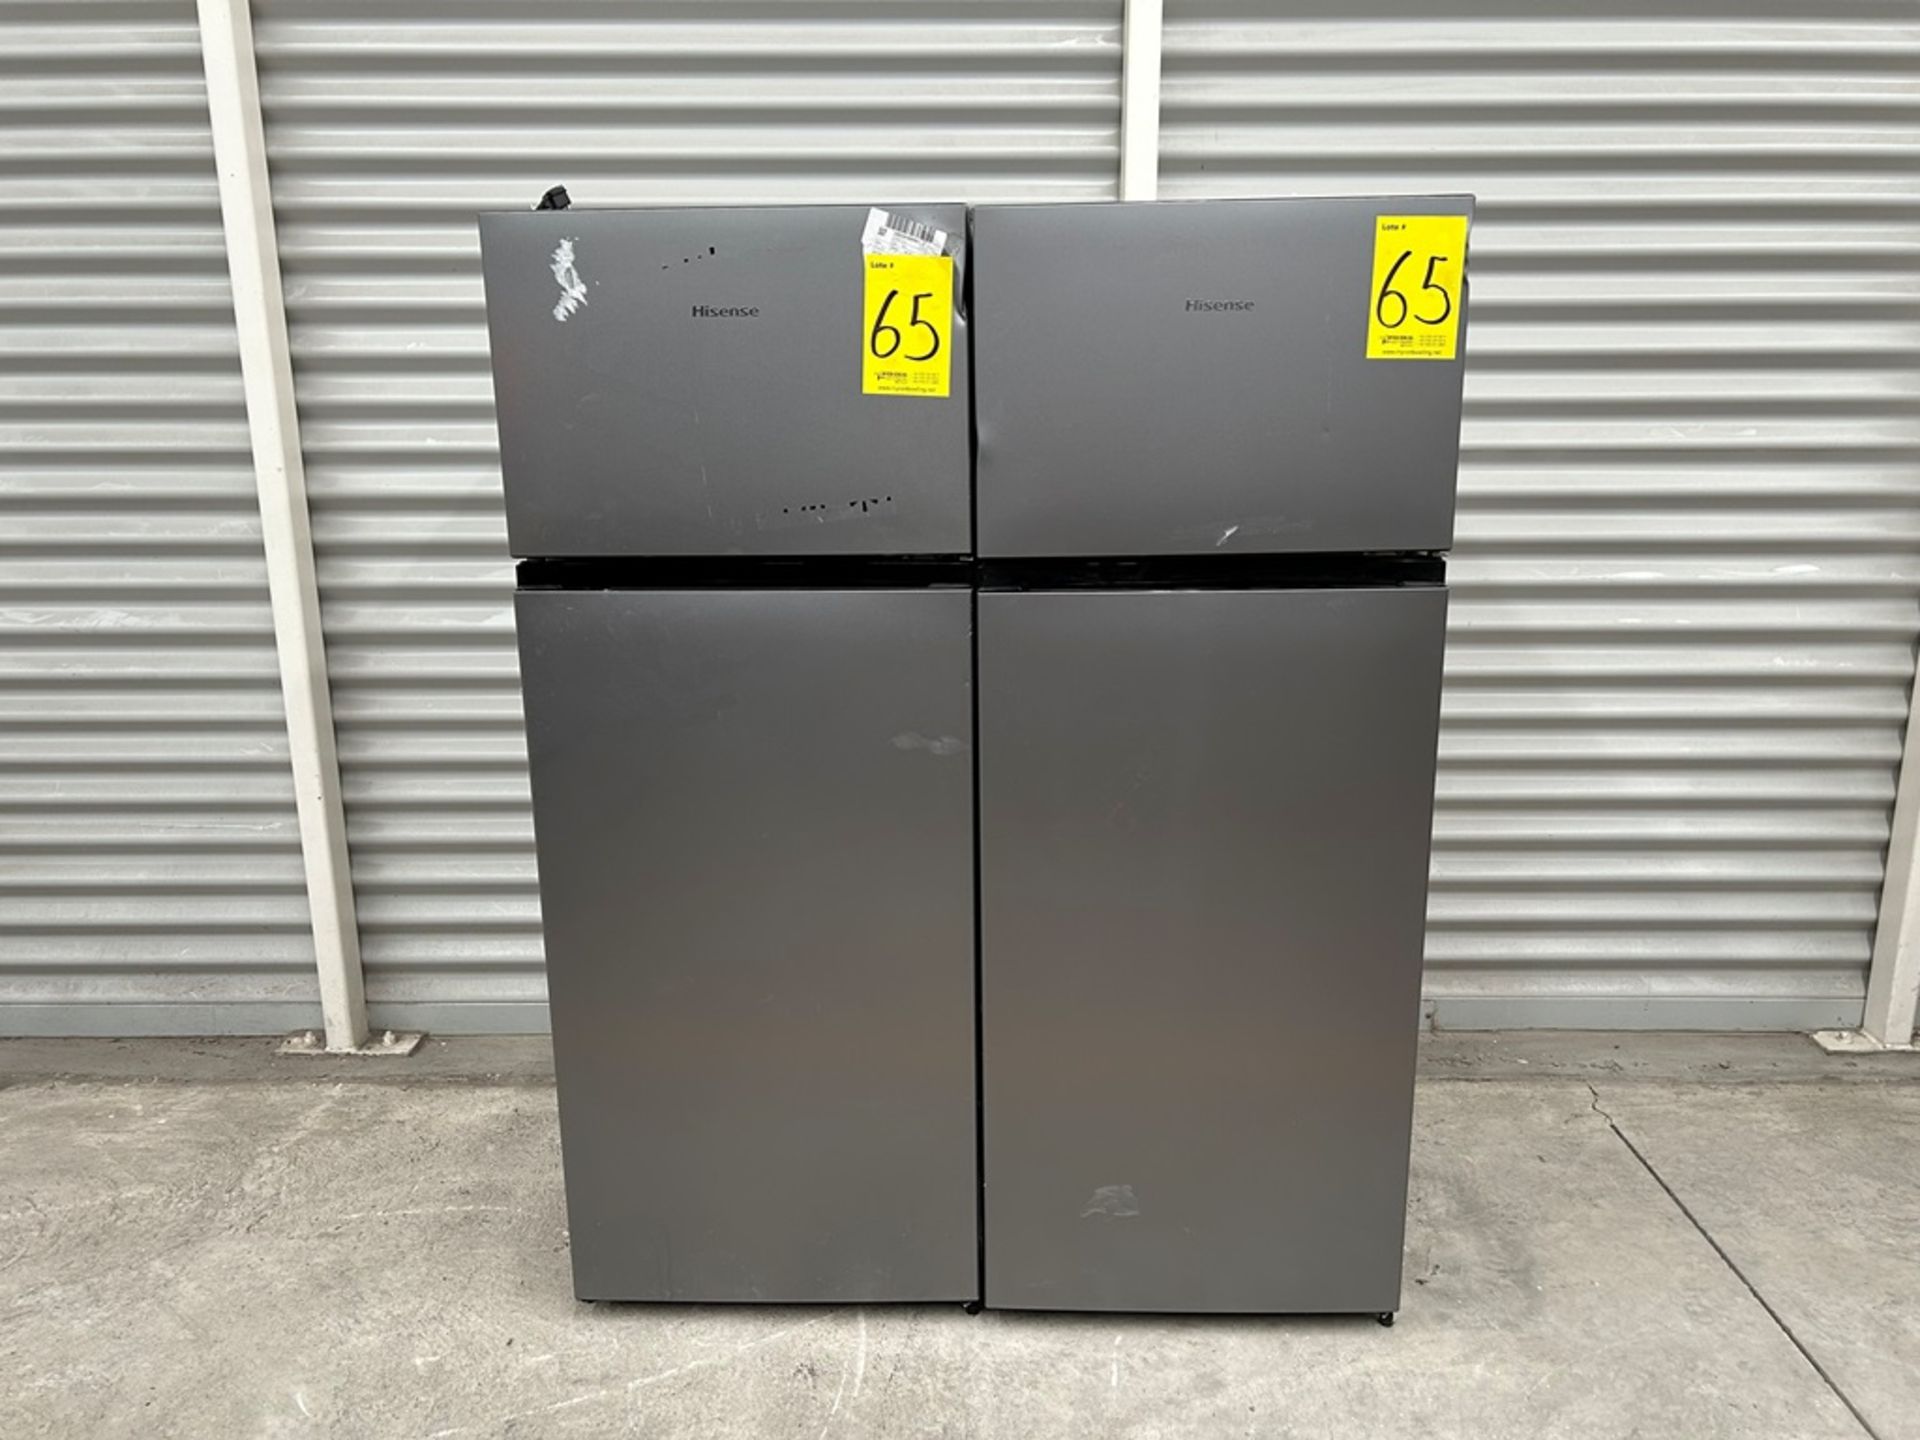 Lote de 2 refrigeradores contiene: 1 Refrigerador Marca HISENSE, Modelo RT80D6AGX, Color GRIS; 1 Re